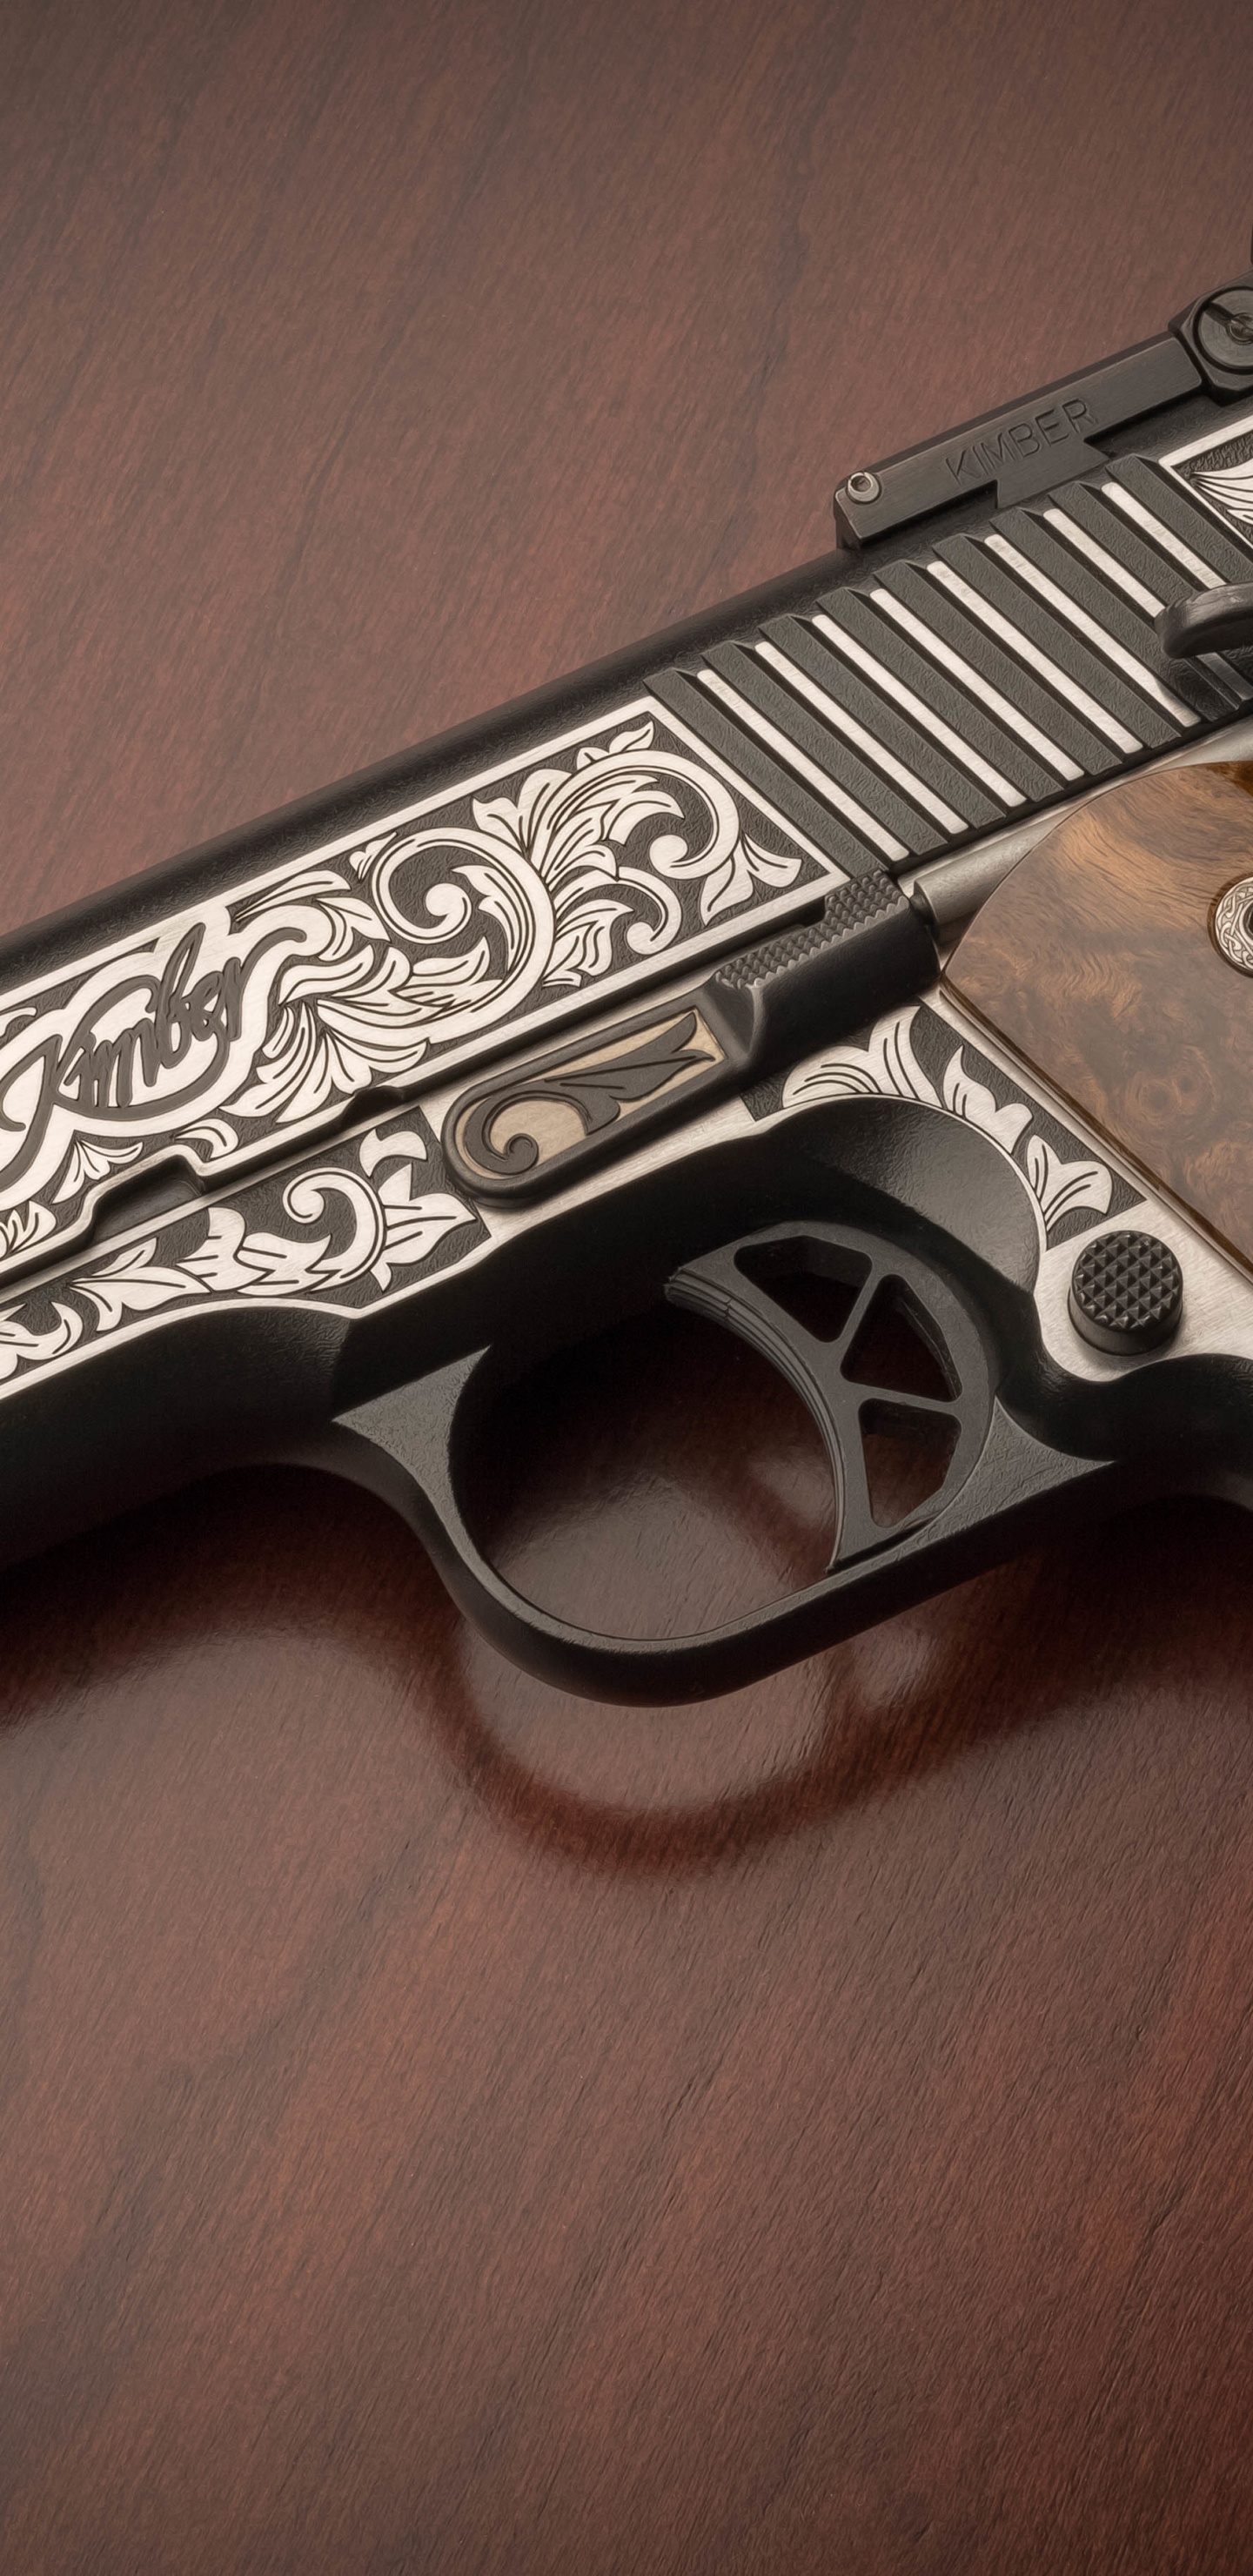 M1911 Pistola, Arma, Gatillo, Cañón de la Pistola, Pistola de Accesorios. Wallpaper in 1440x2960 Resolution